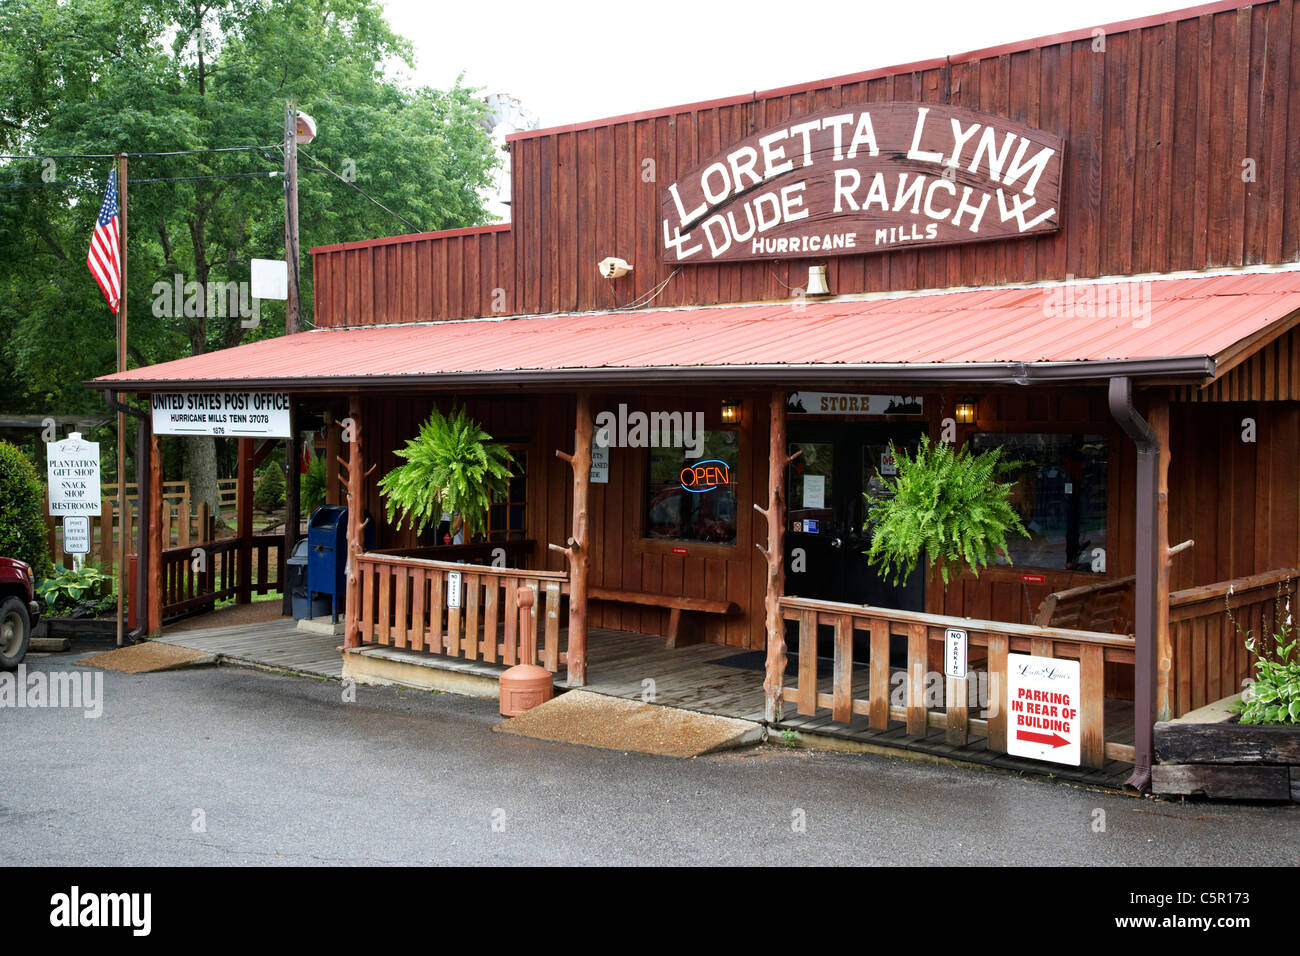 Tienda y oficina de correos de la Loretta Lynn rancho vacacional Hurricane Mills, Tennessee, EE.UU. Foto de stock